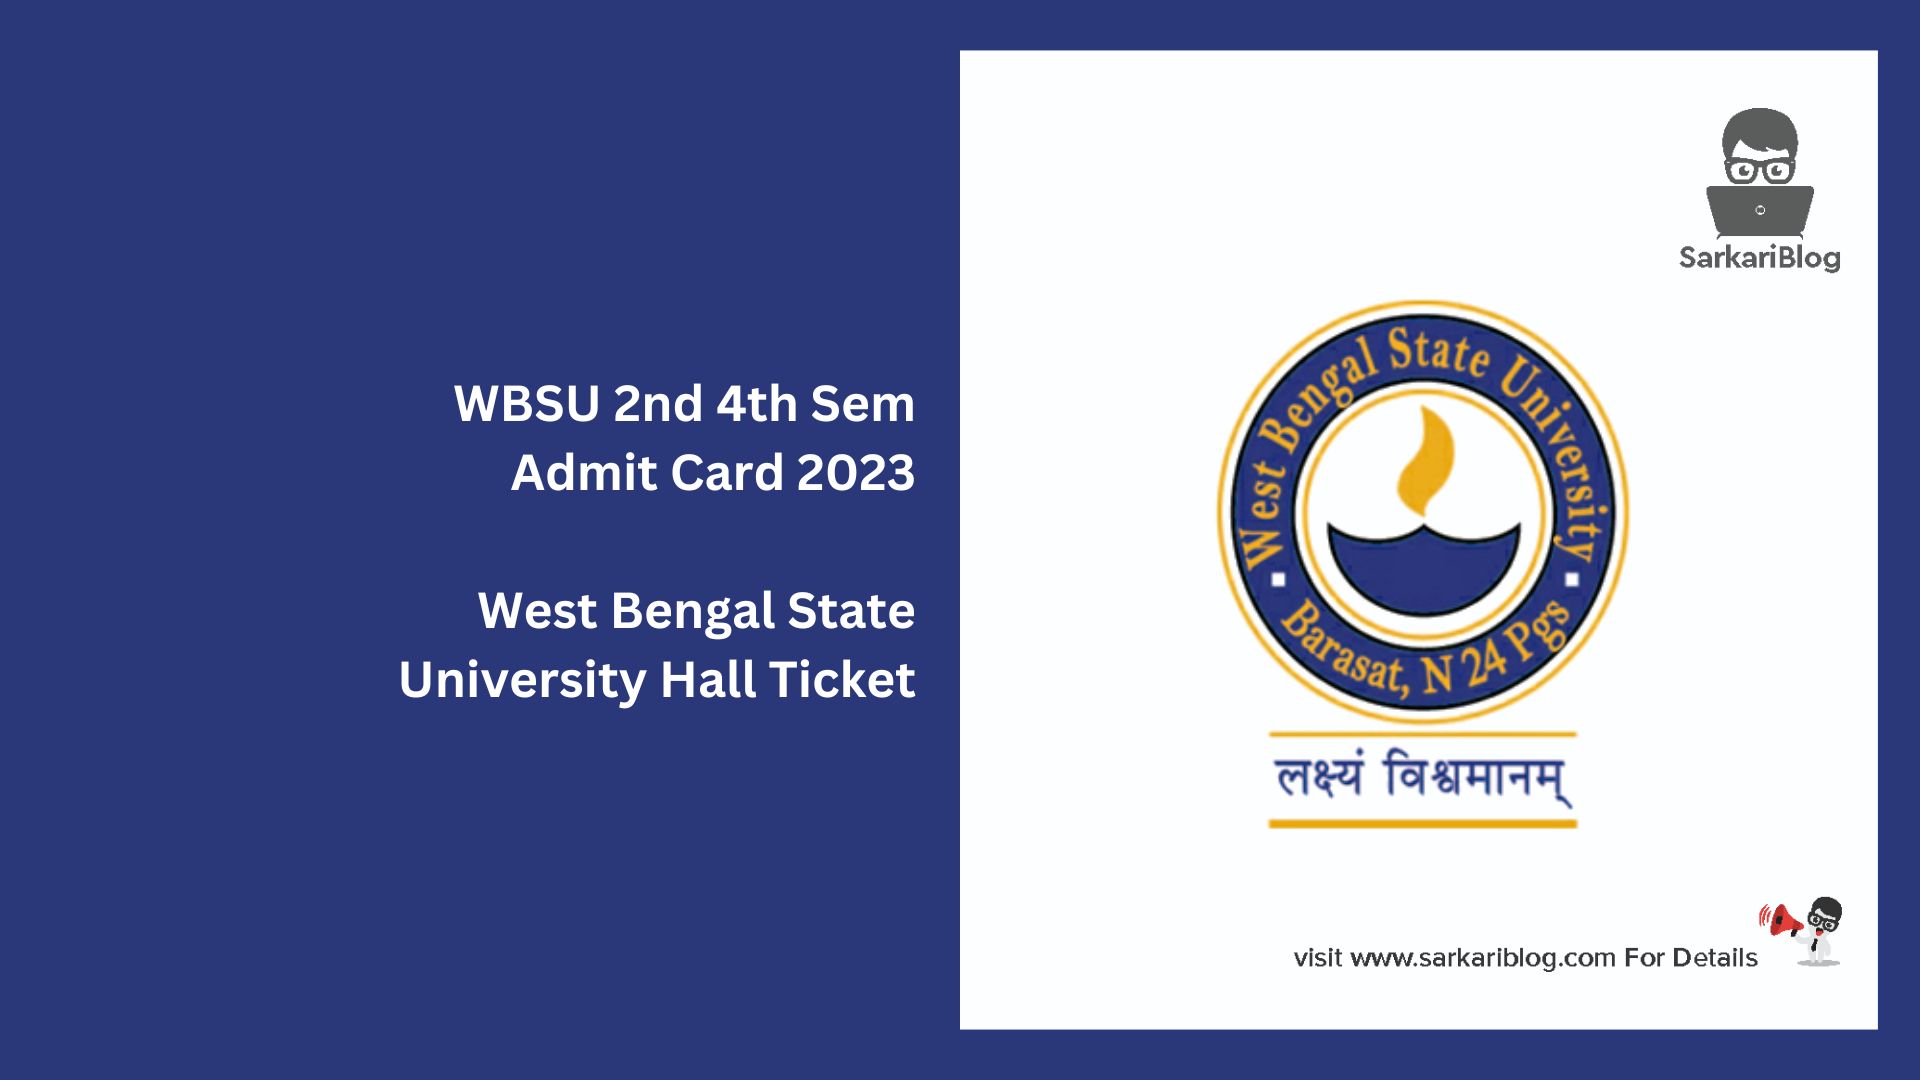 WBSU 2nd 4th Sem Admit Card 2023